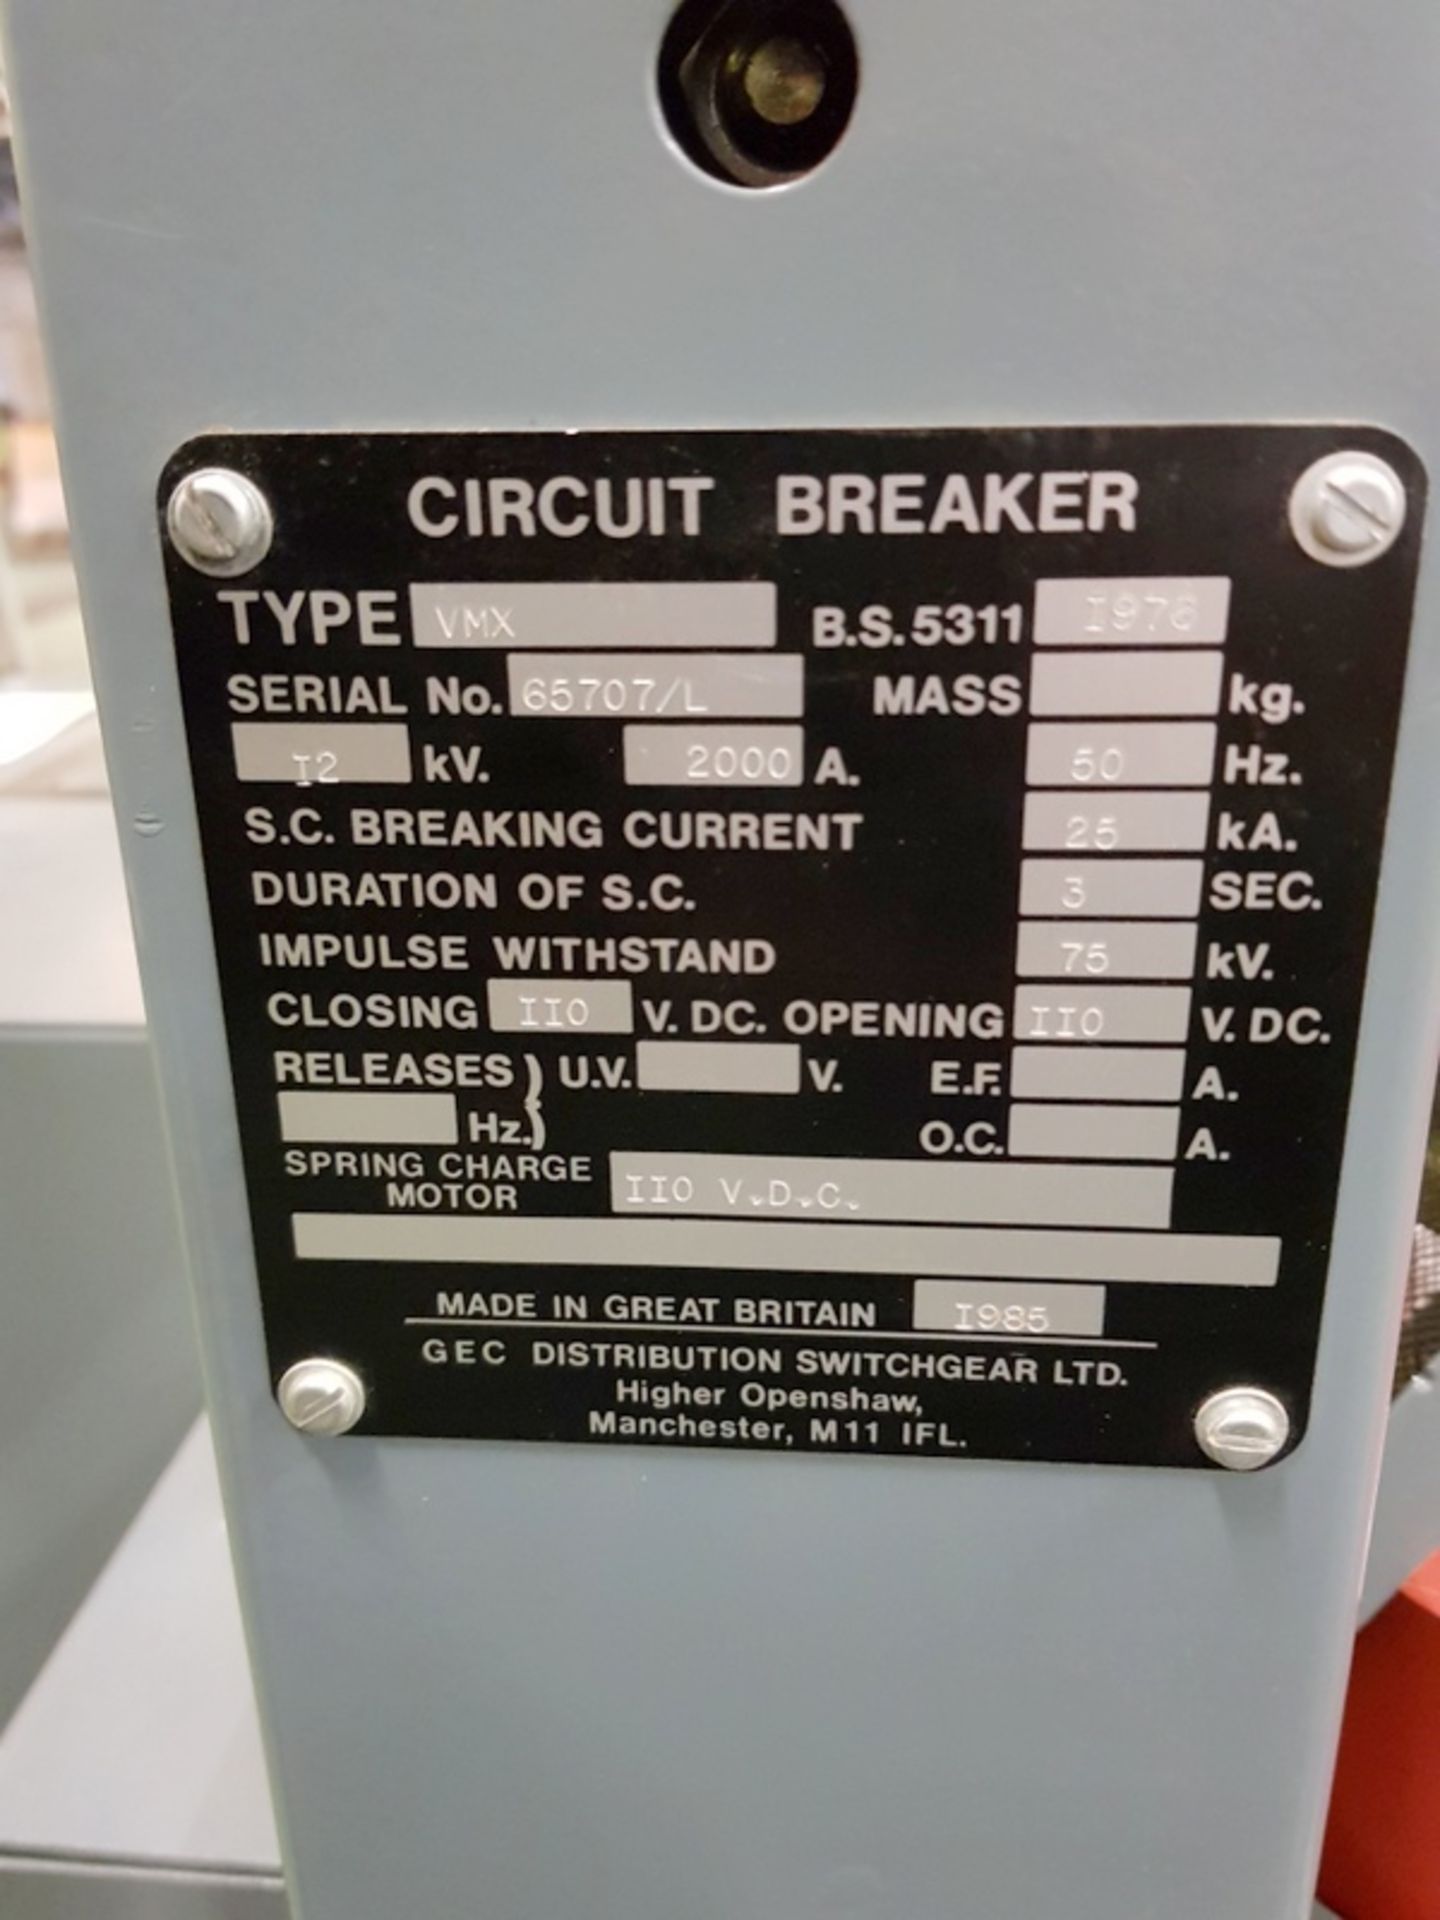 Gec Alstom- Circuit breakers 2000 amps - Image 4 of 5